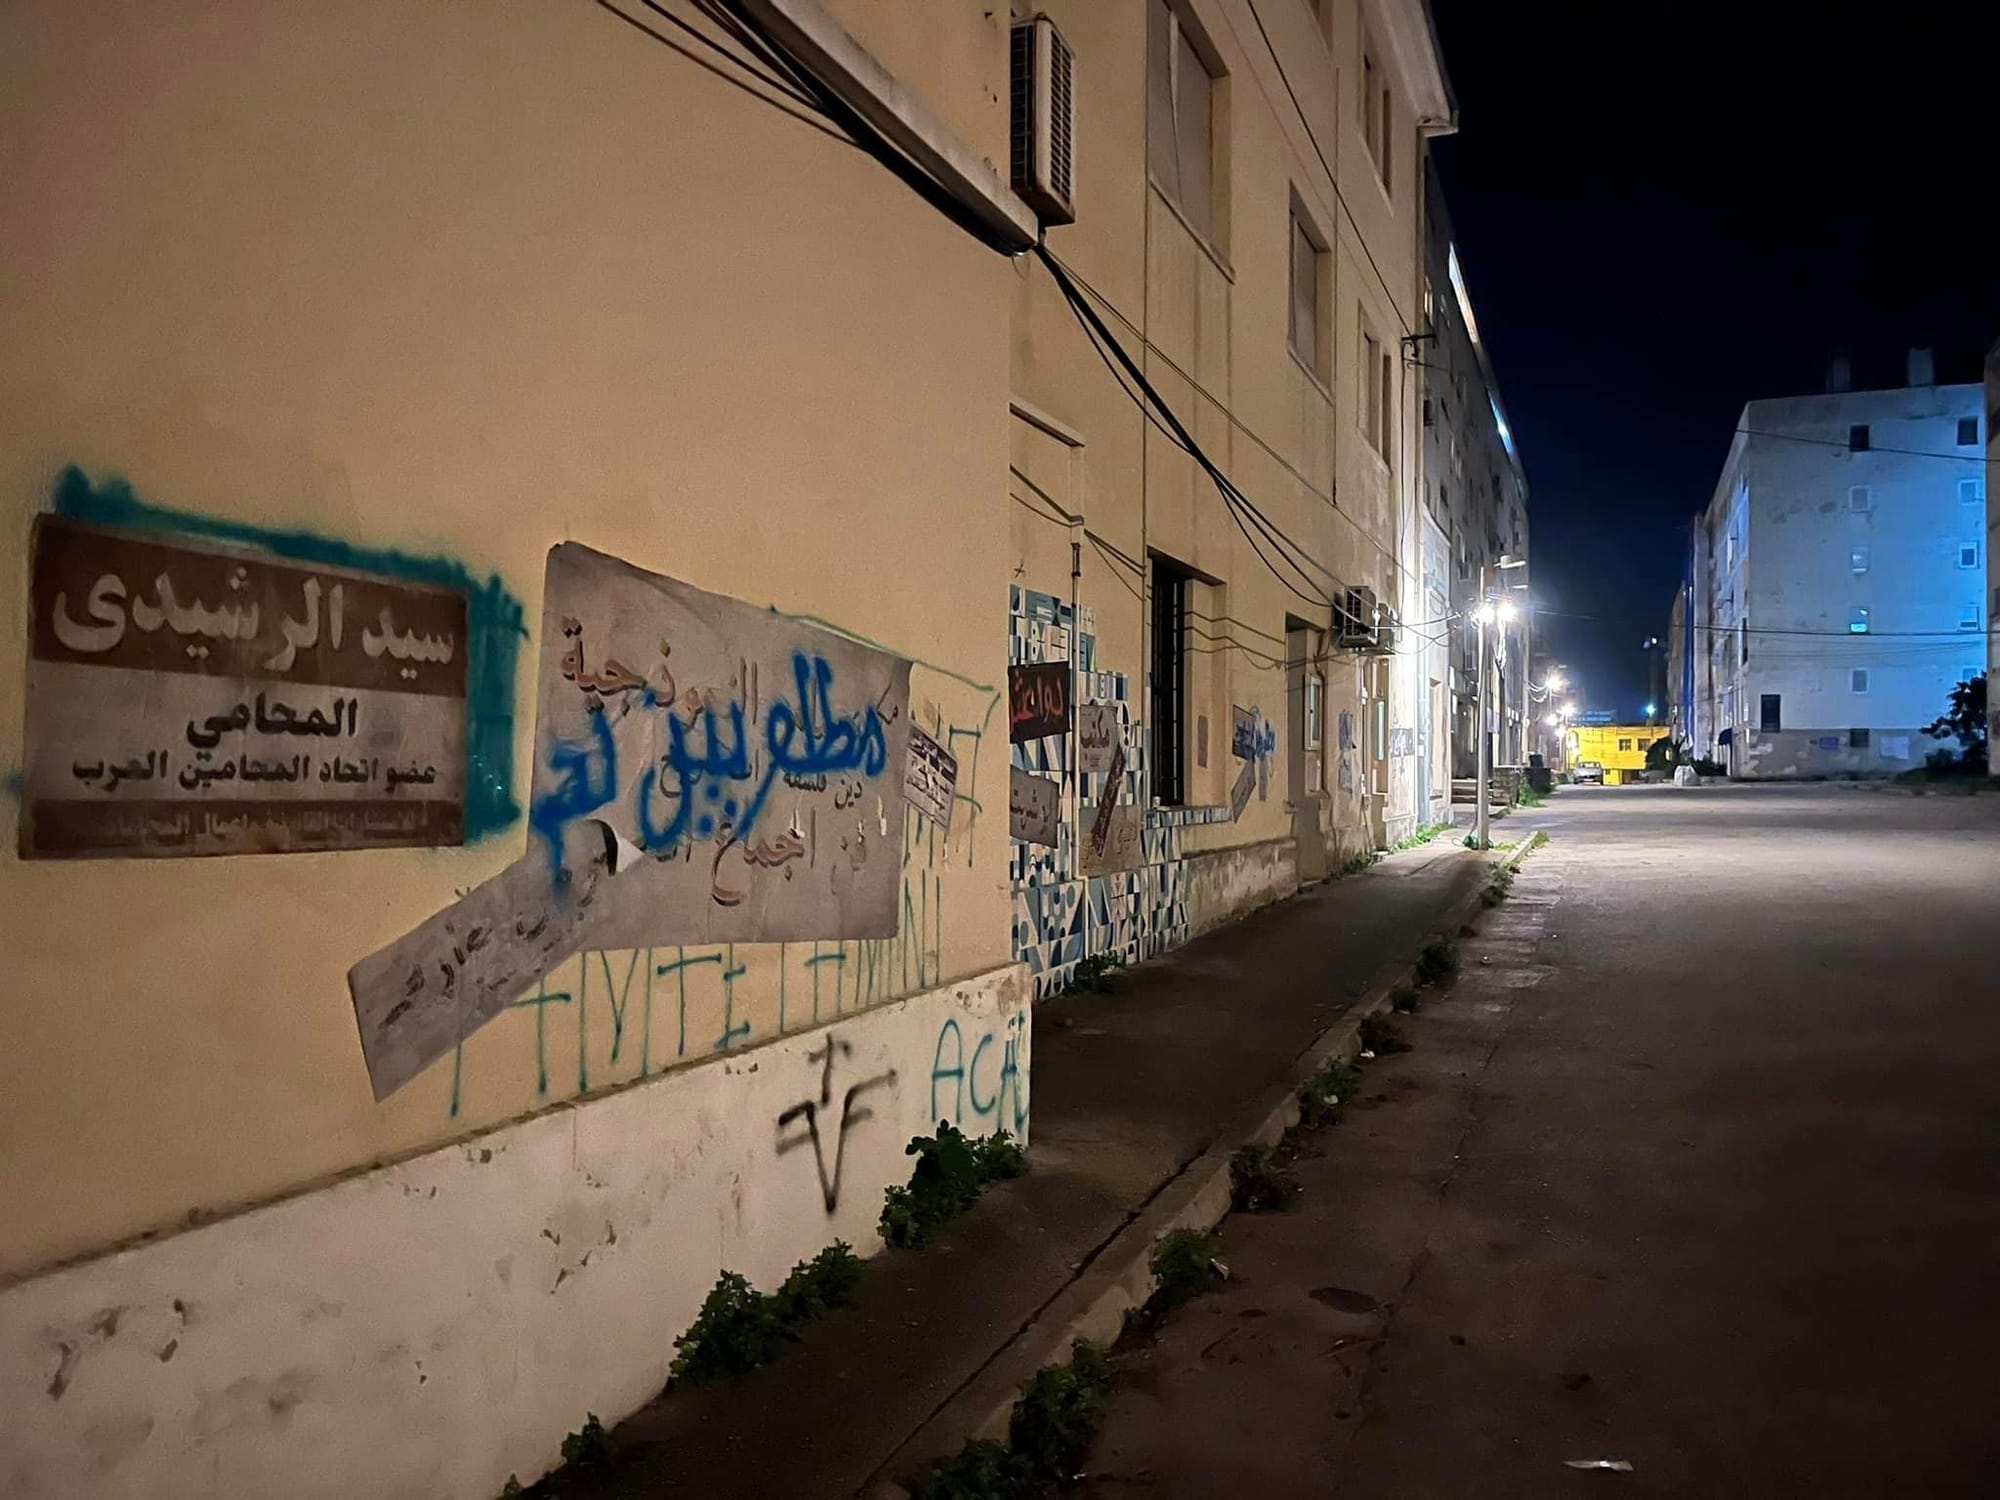 Zadrane šokirali natpisi po fasadama na arapskom: "Grad 'glumi' Mosul"